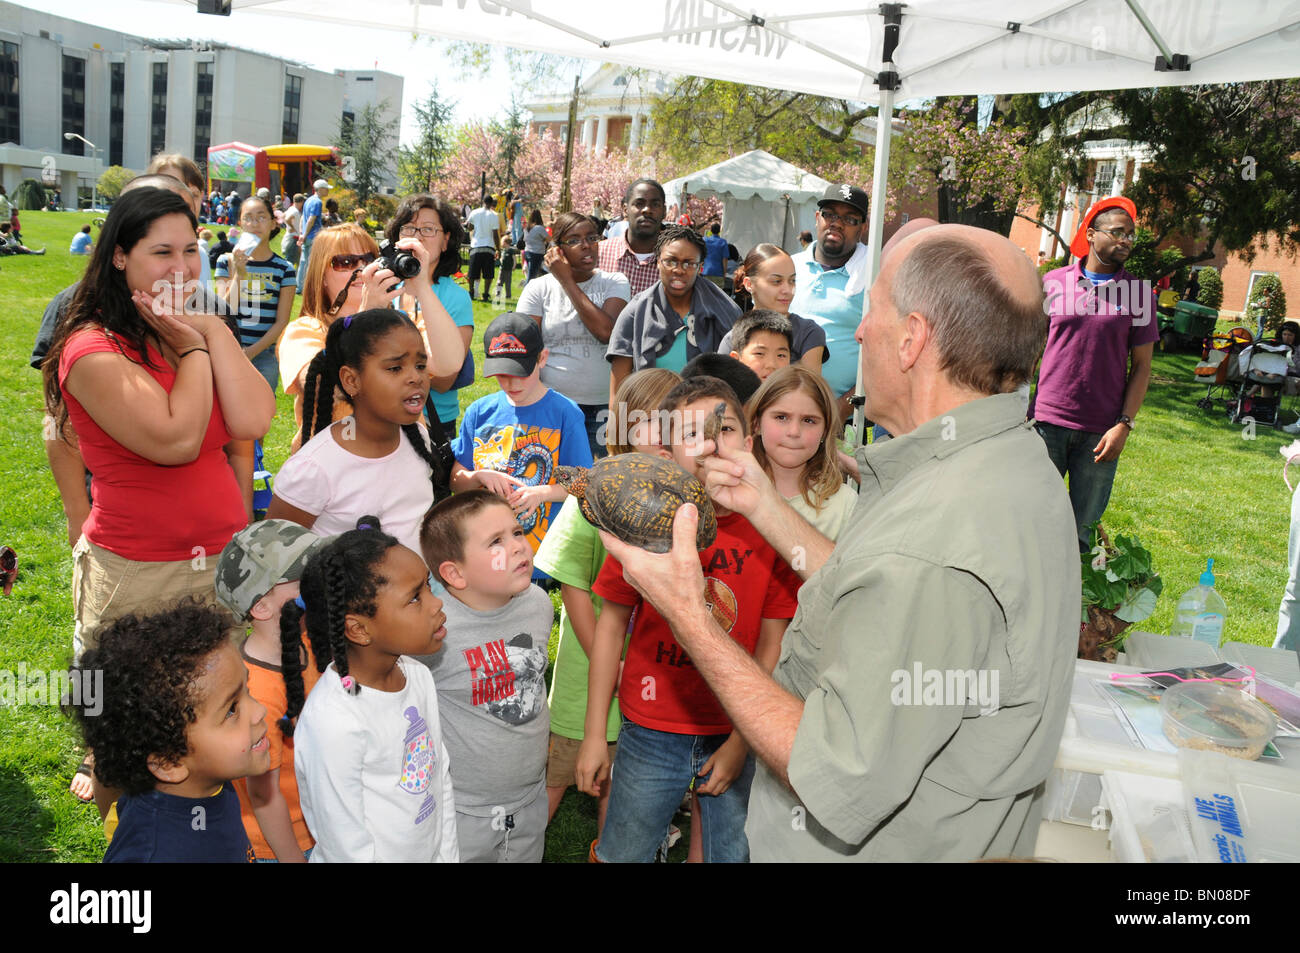 Un expert de la faune indique aux enfants une boîte tortue en un festival à Takoma Park, Maryland Banque D'Images